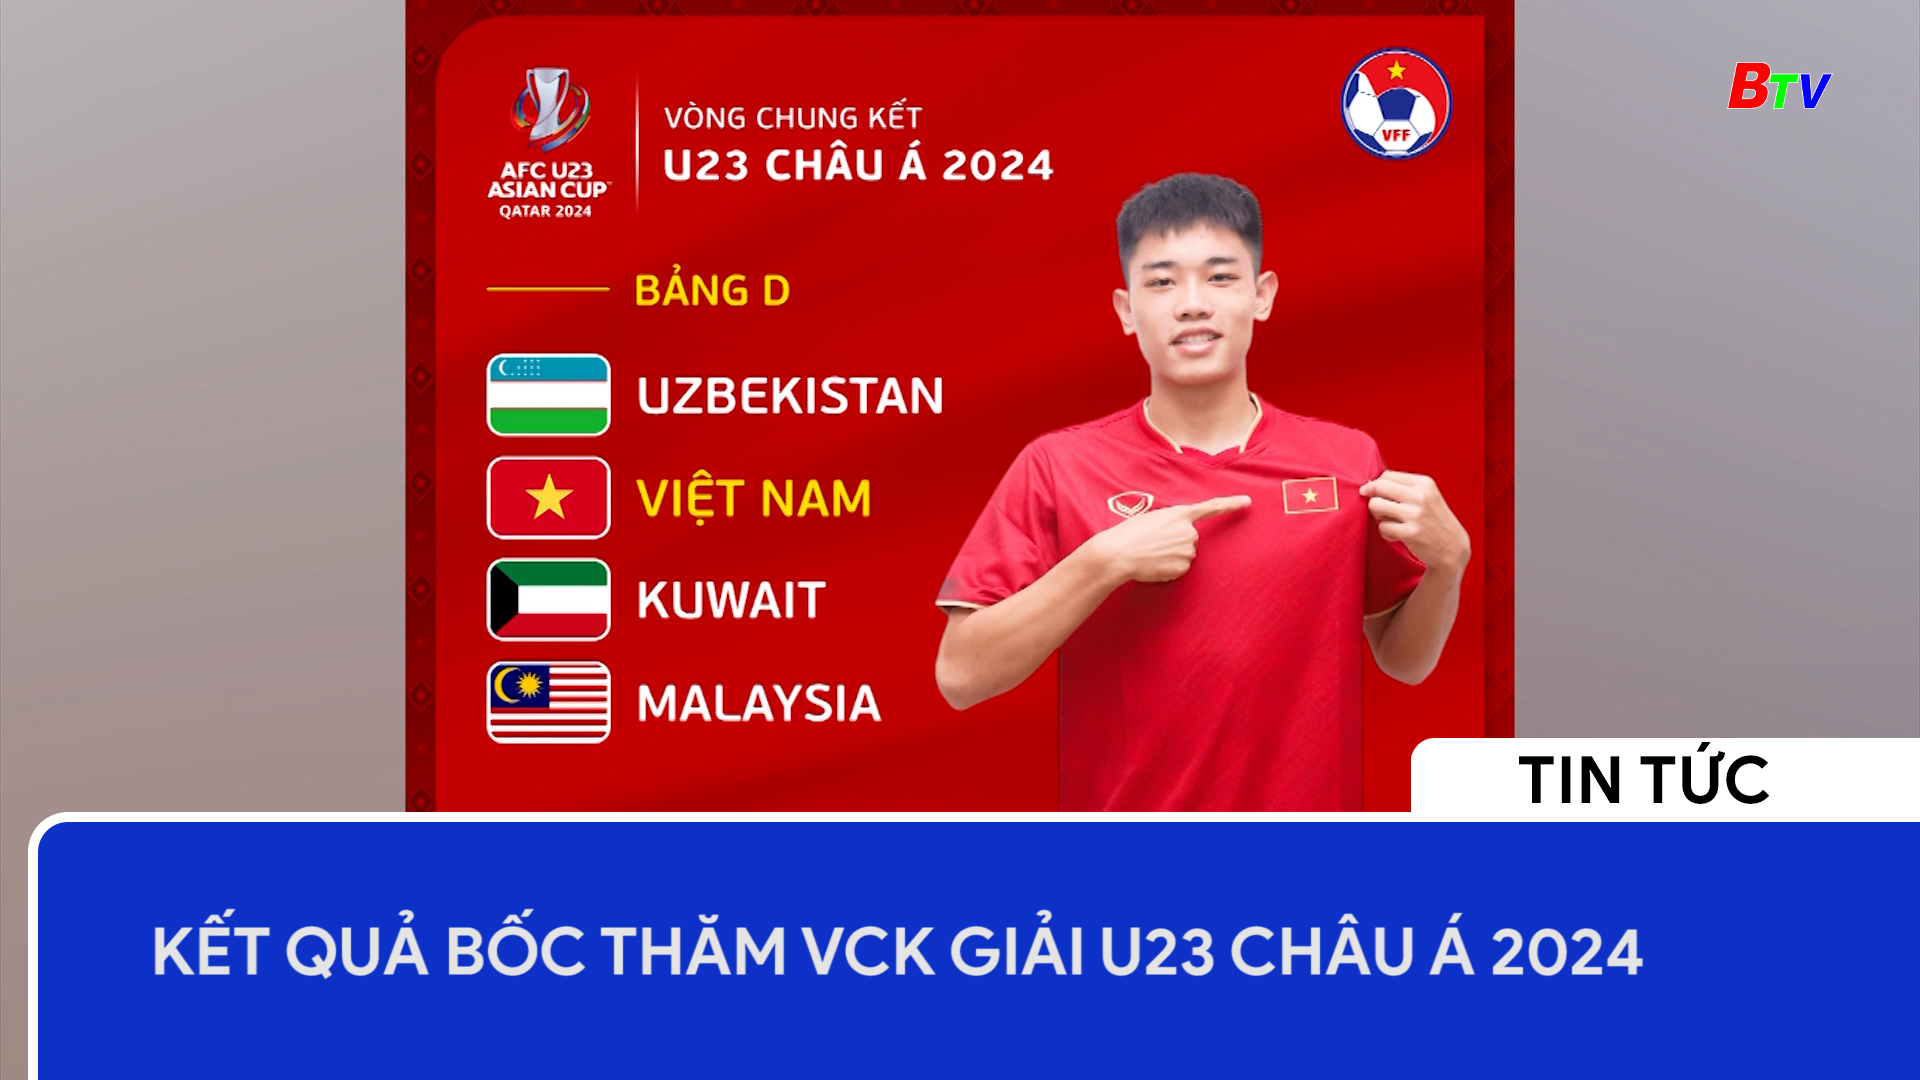 Kết quả bốc thăm VCK Giải U23 châu Á 2024